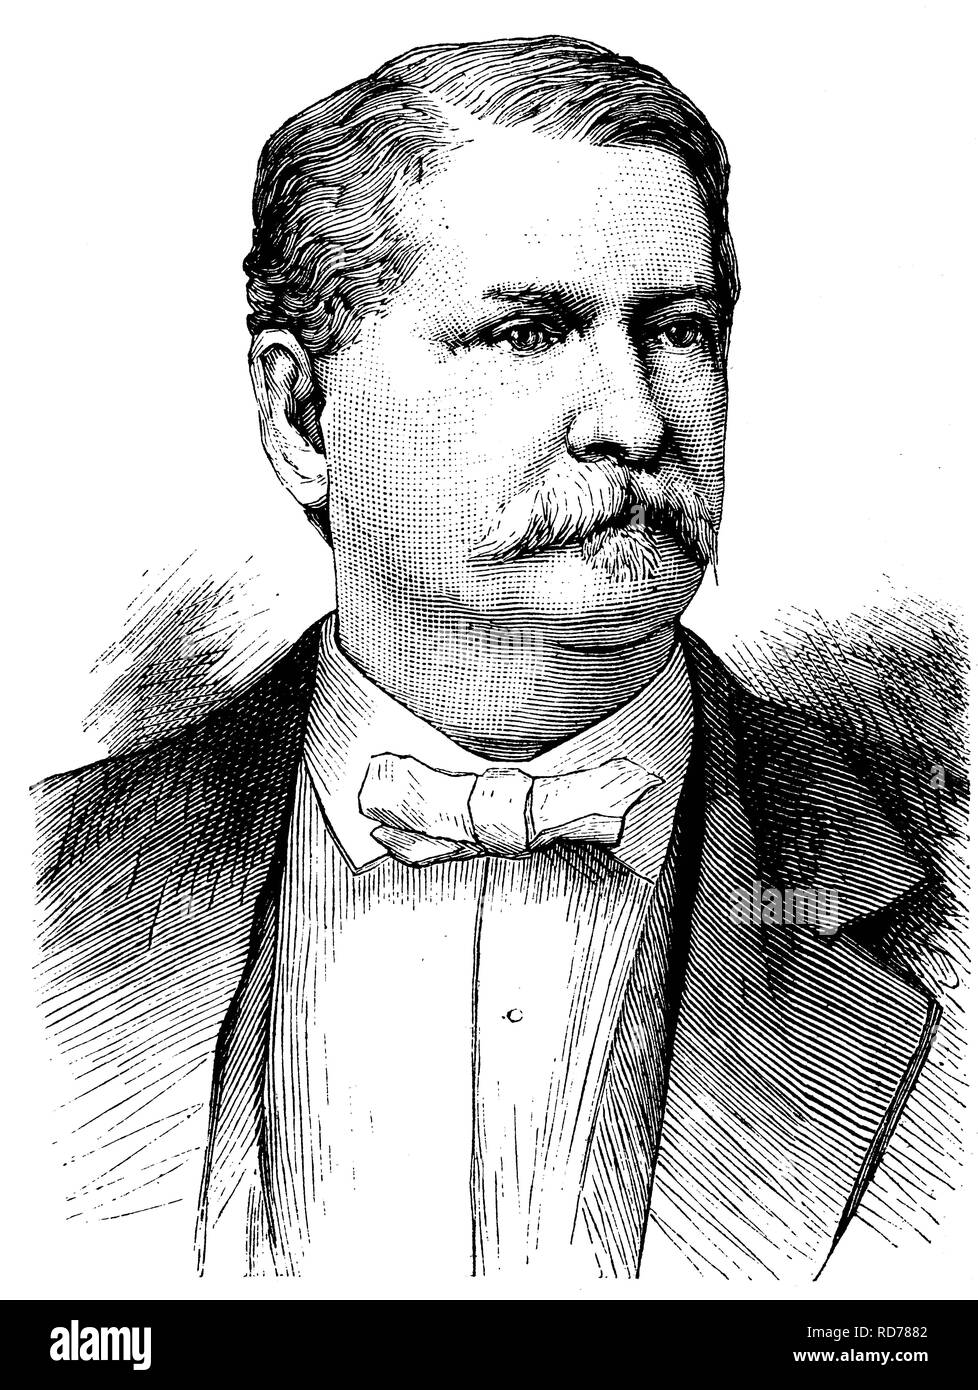 Winfield Scott Hancock, 1824-1886, el General de División del Ejército de los Estados Unidos, el candidato demócrata para las elecciones presidenciales de los EE.UU Foto de stock